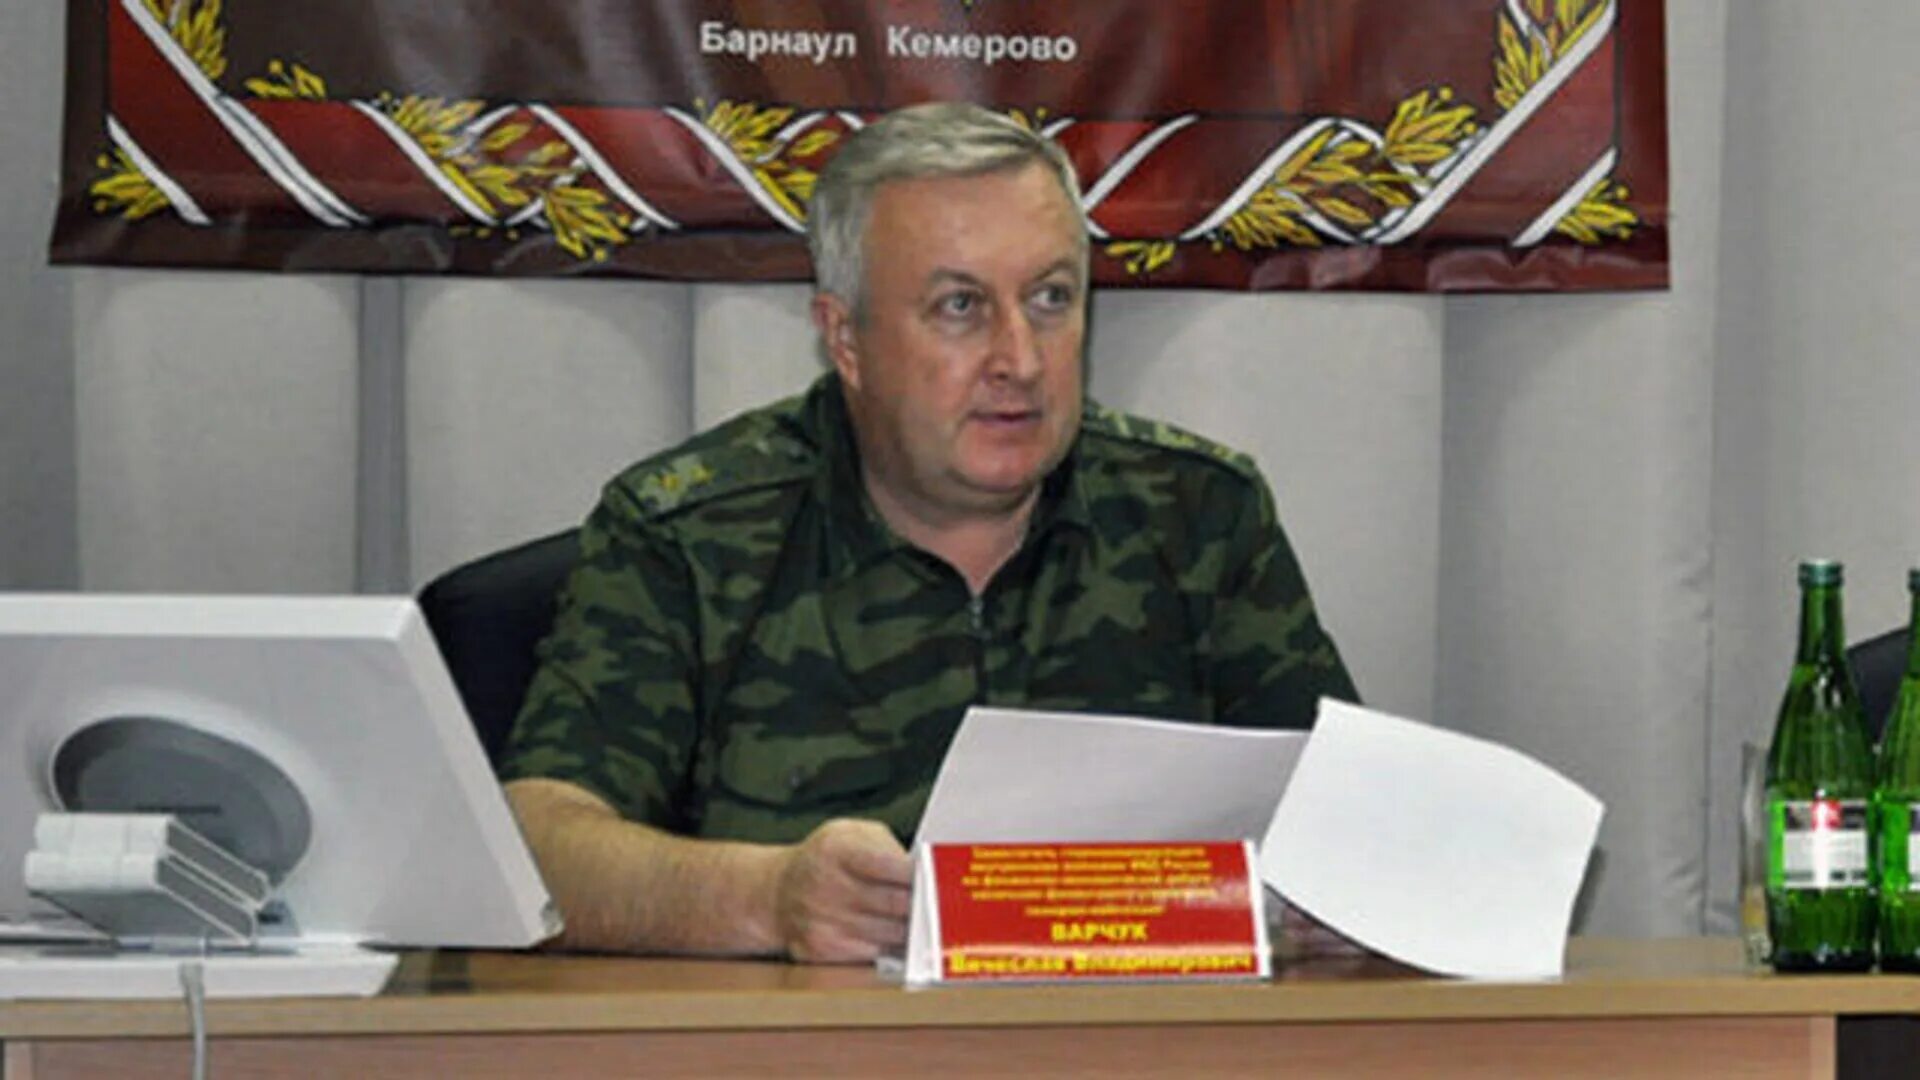 Генерал Варчук Росгвардия. Генерал долгов